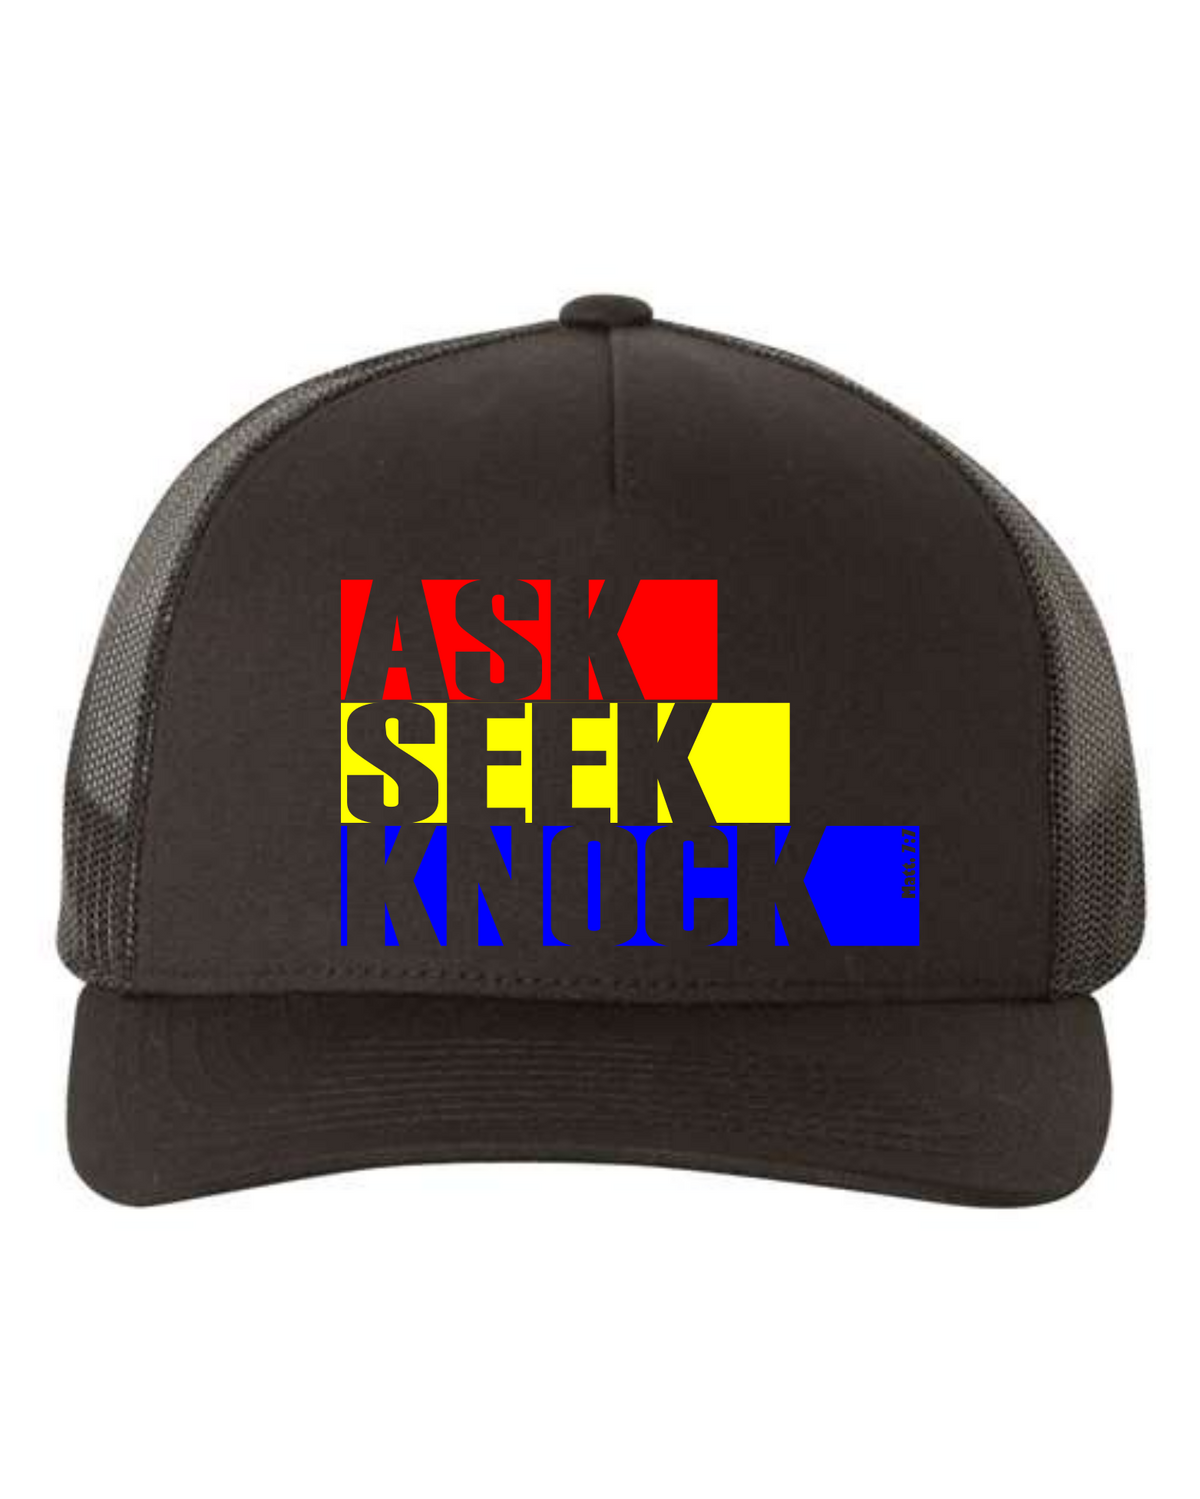 Ask, Seek, Knock - Snap Back Trucker Hat